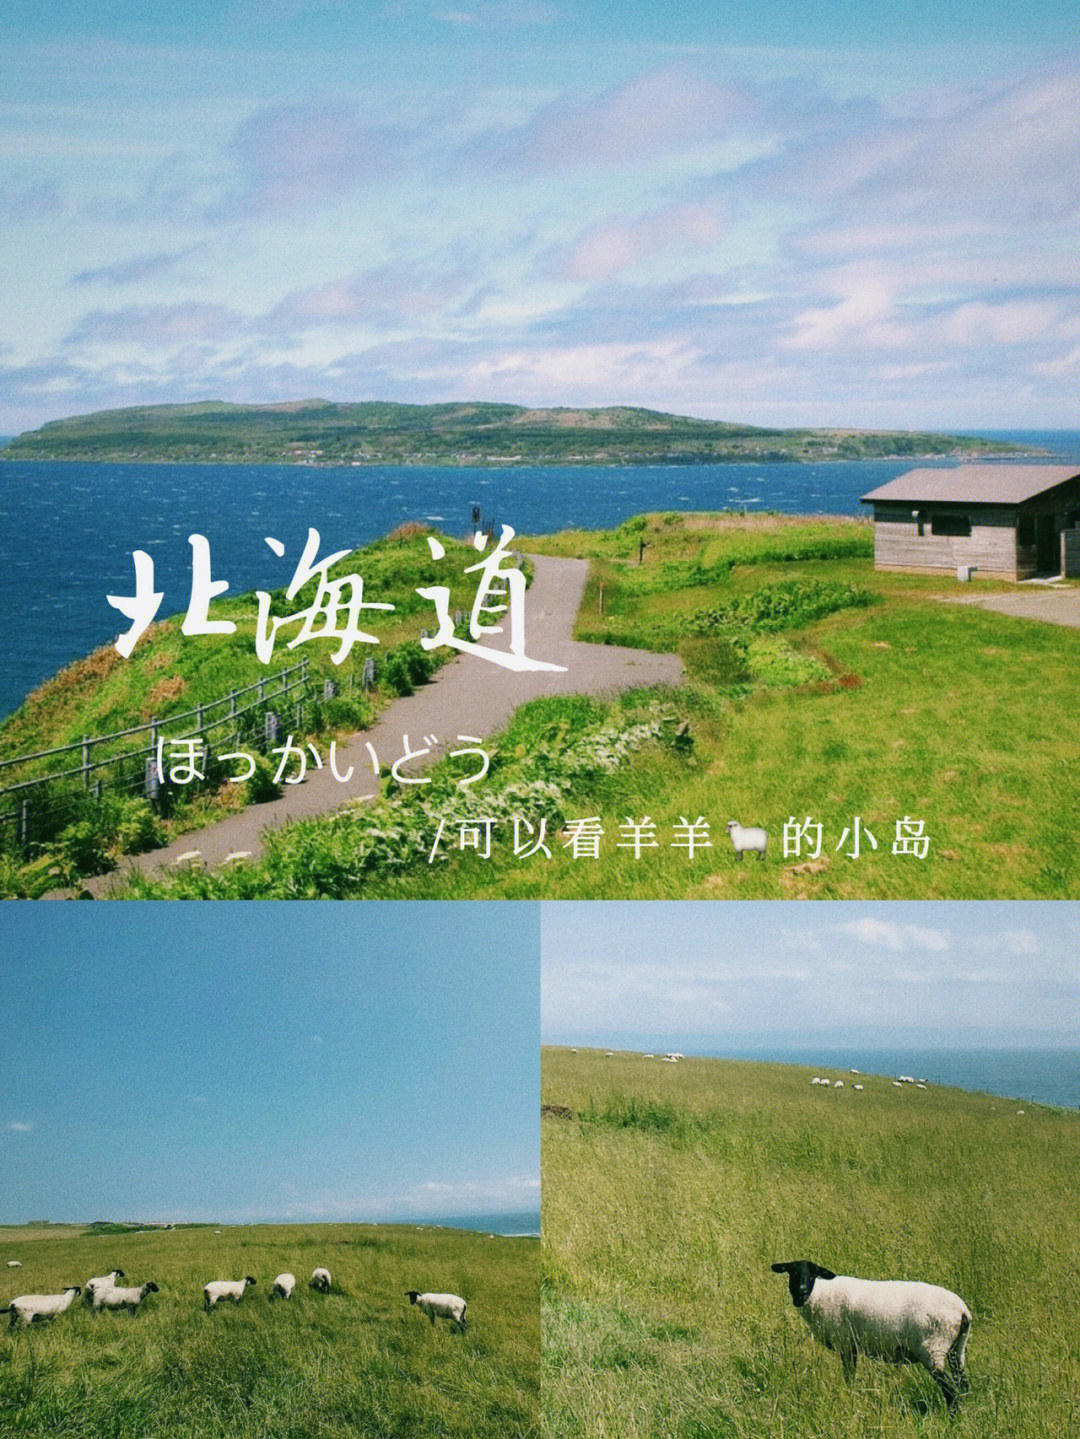 超小众可以看羊羊的小岛in北海道